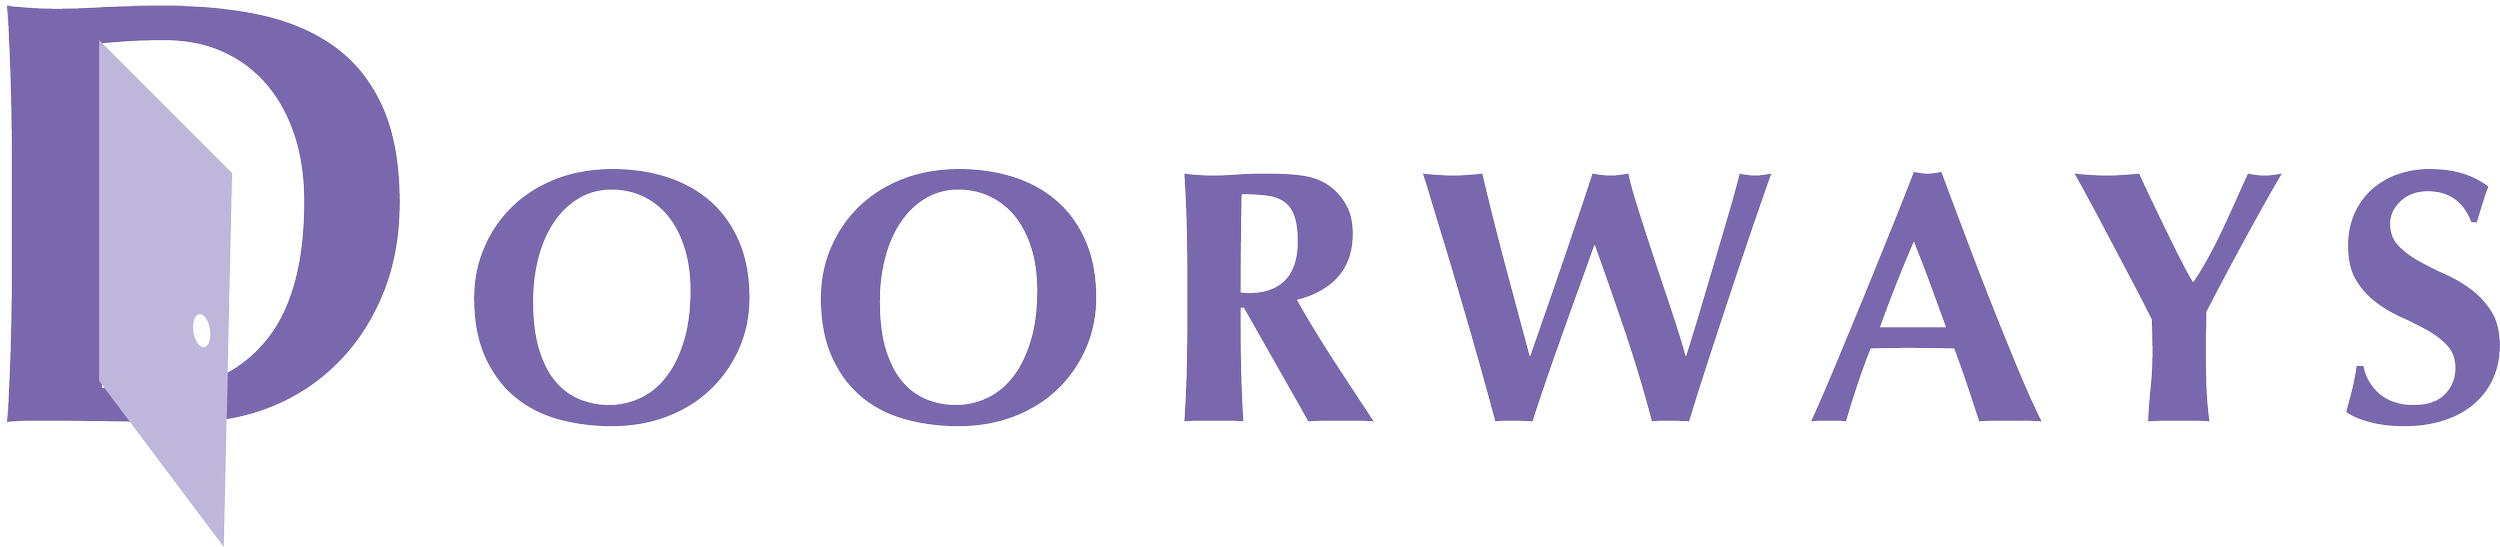 Doorways-Logo.png